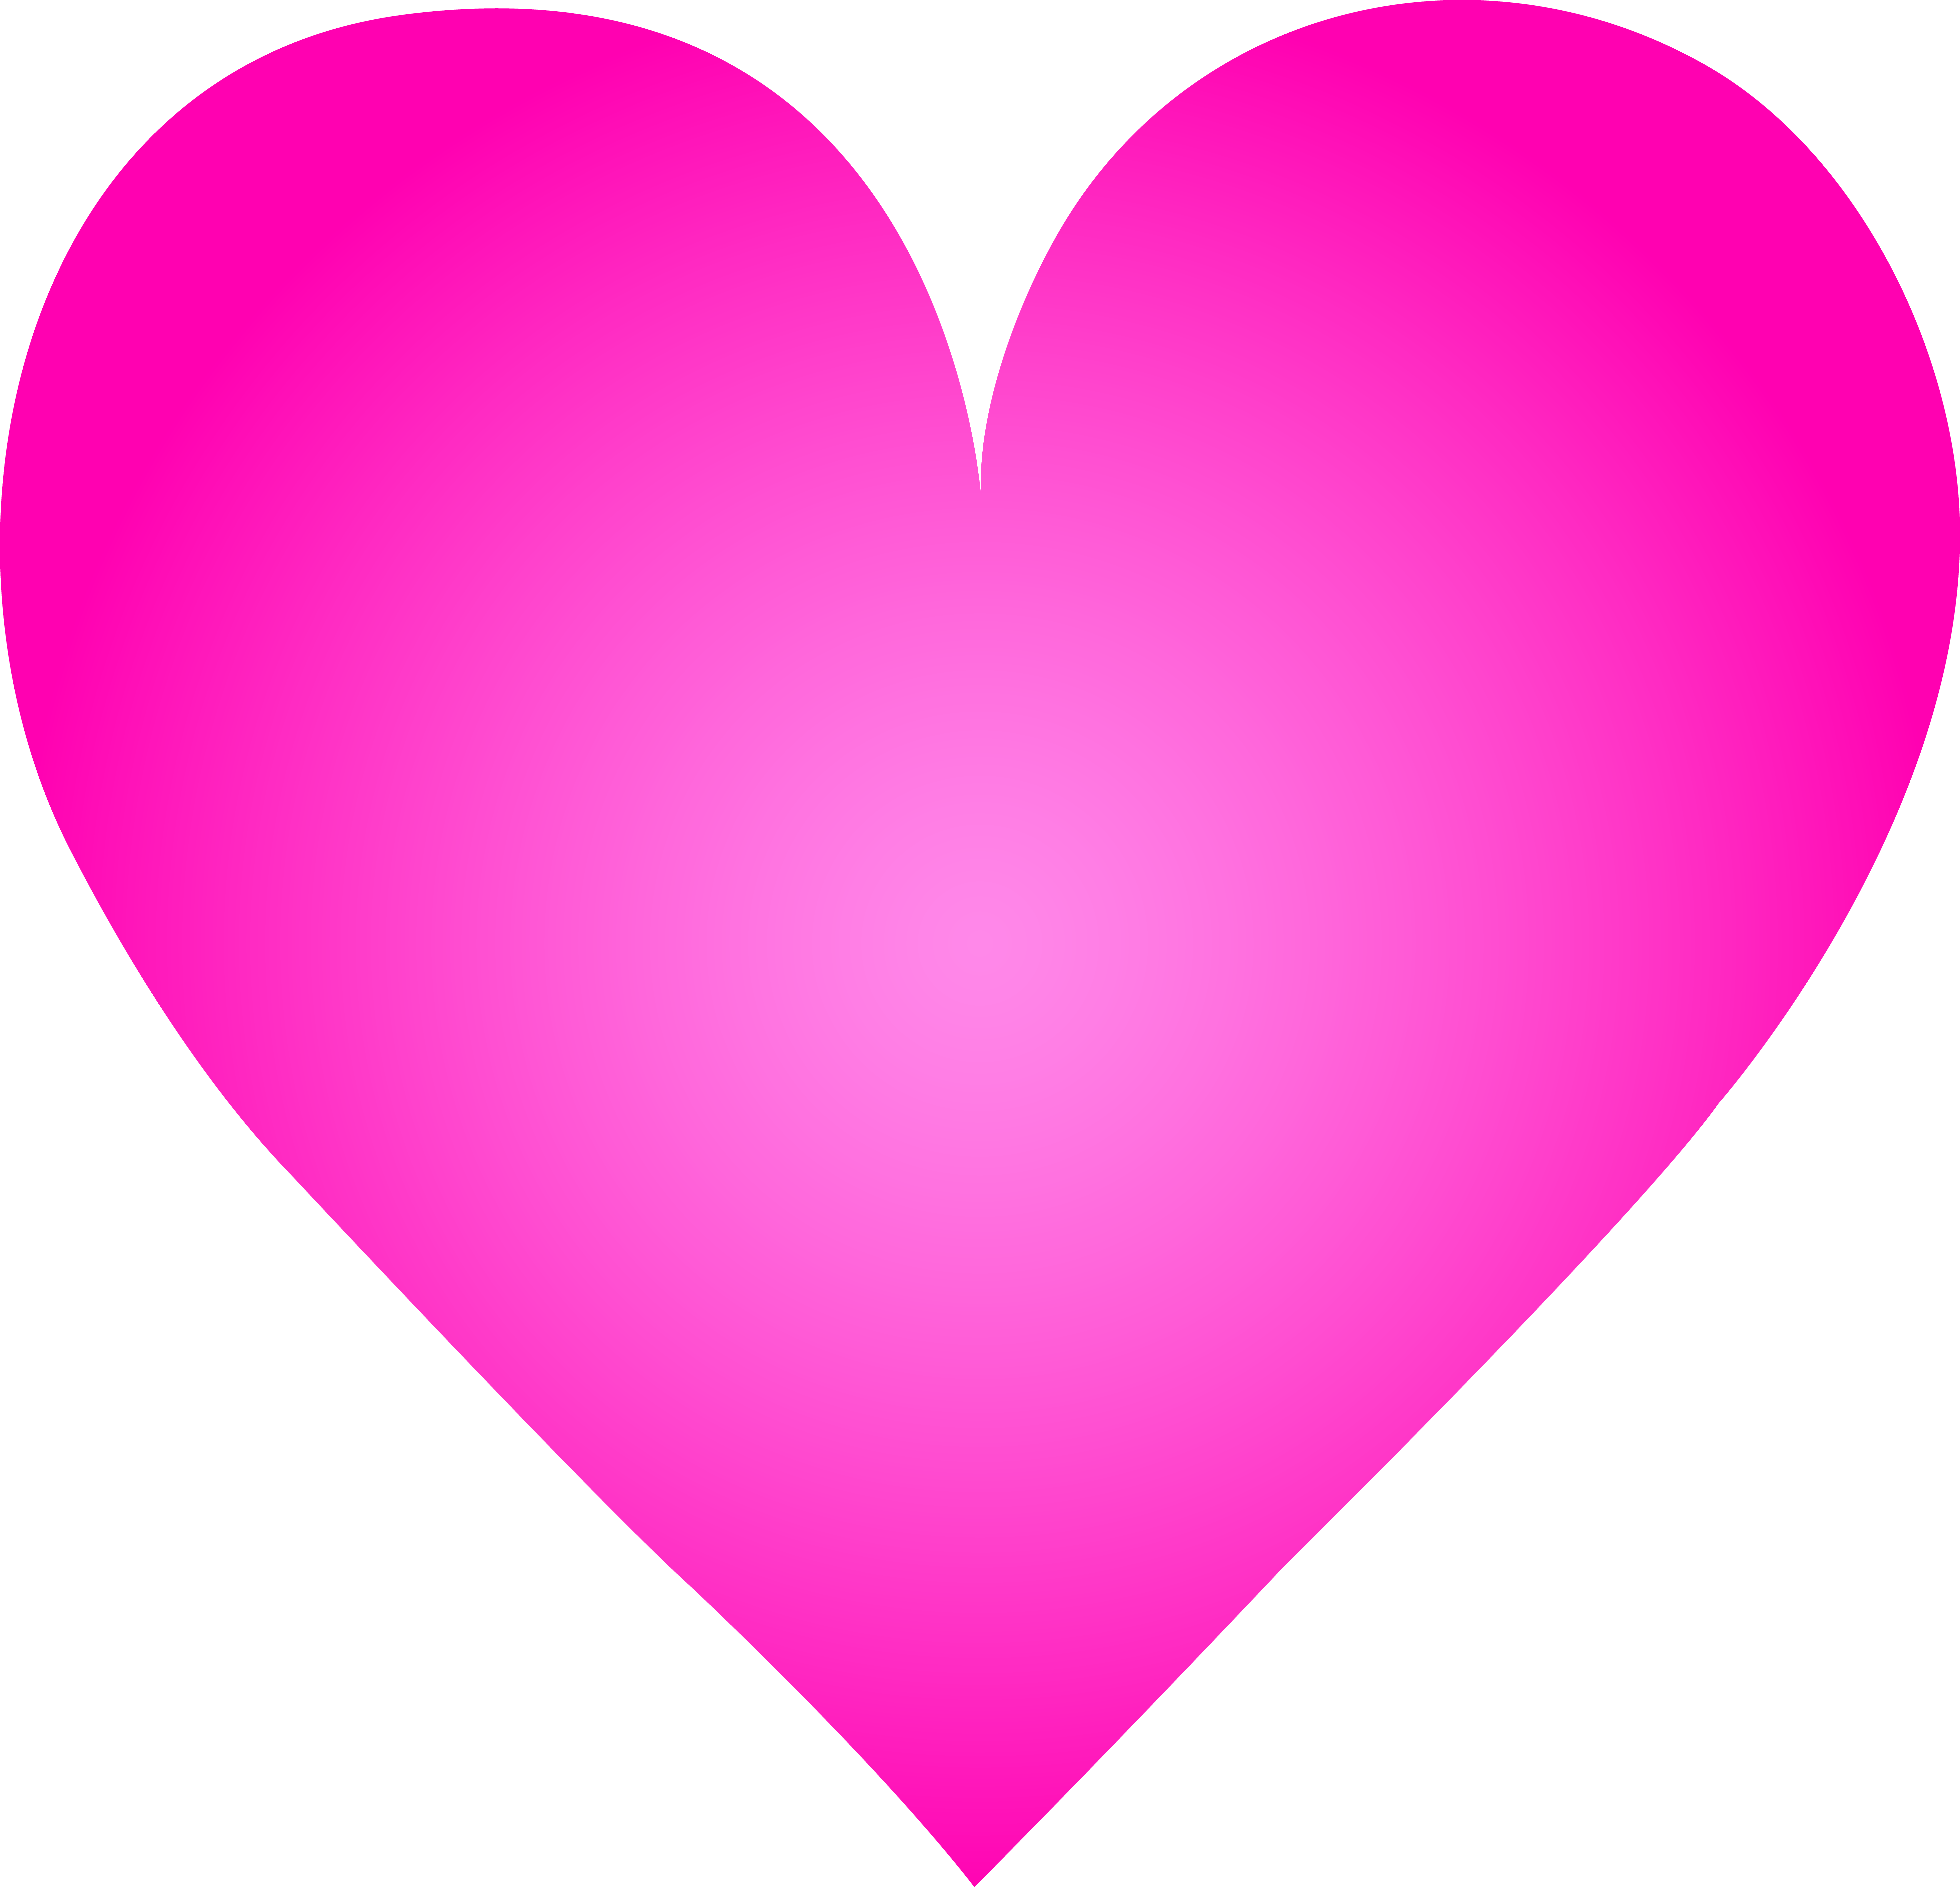 Big Pink Heart - Free Clip Art